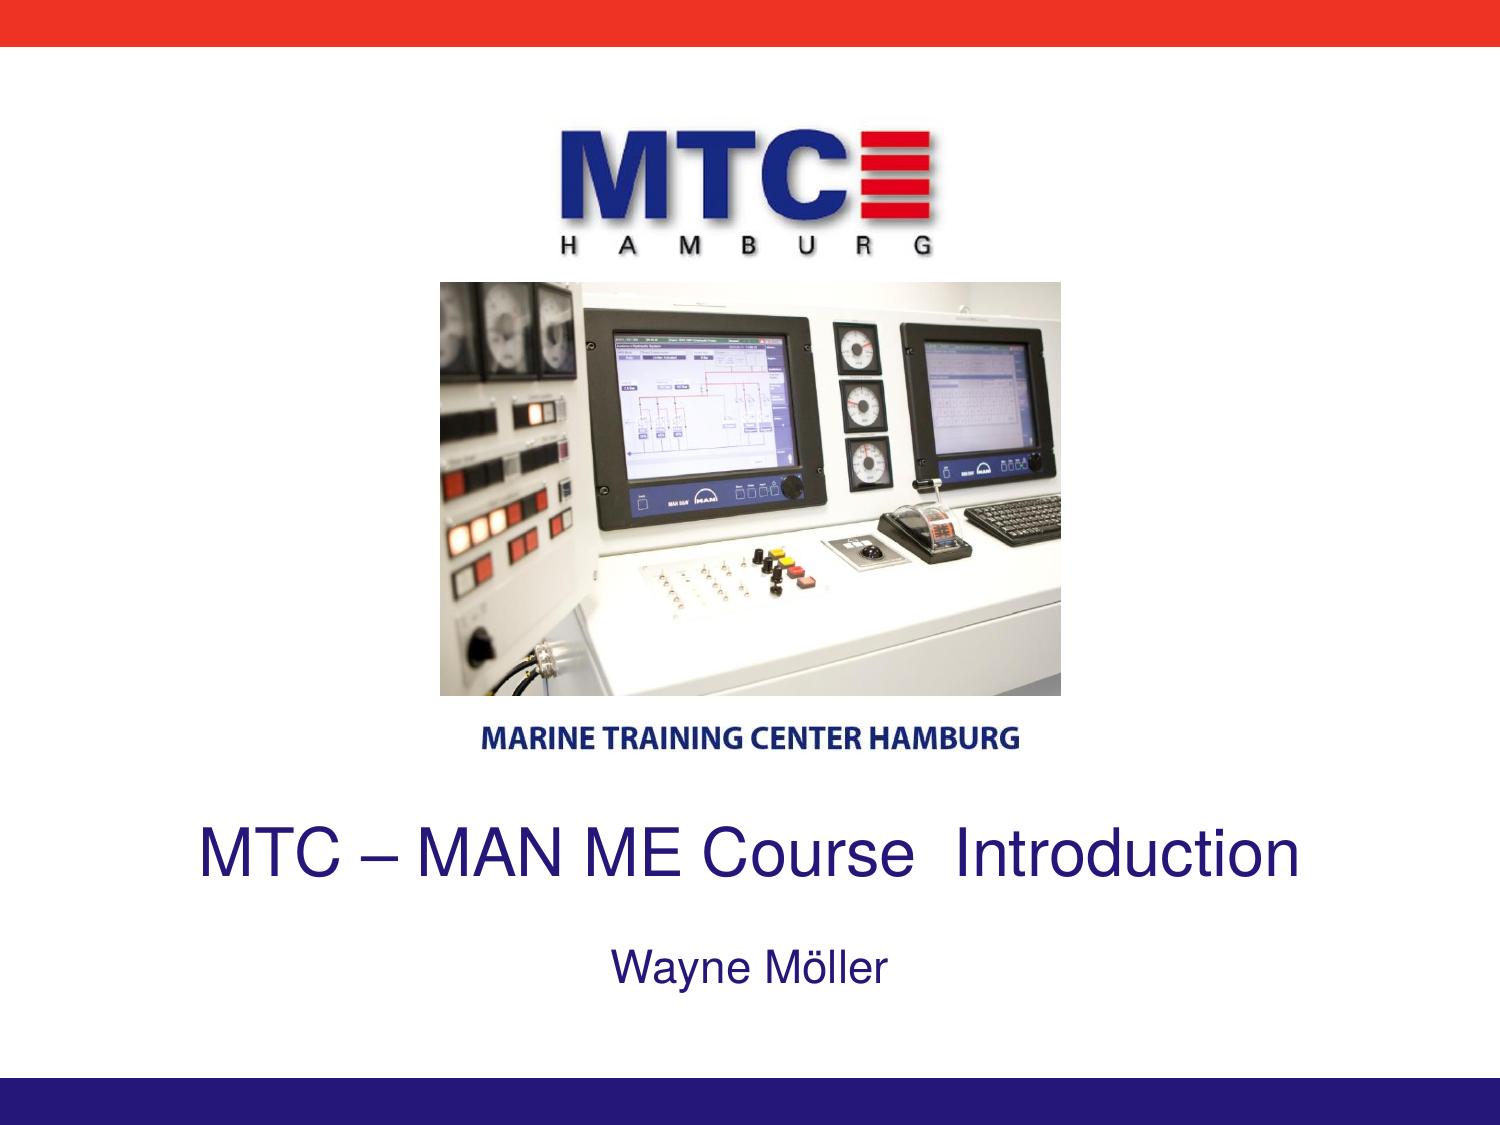 MTC â MAN ME Course Introduction by Unknown